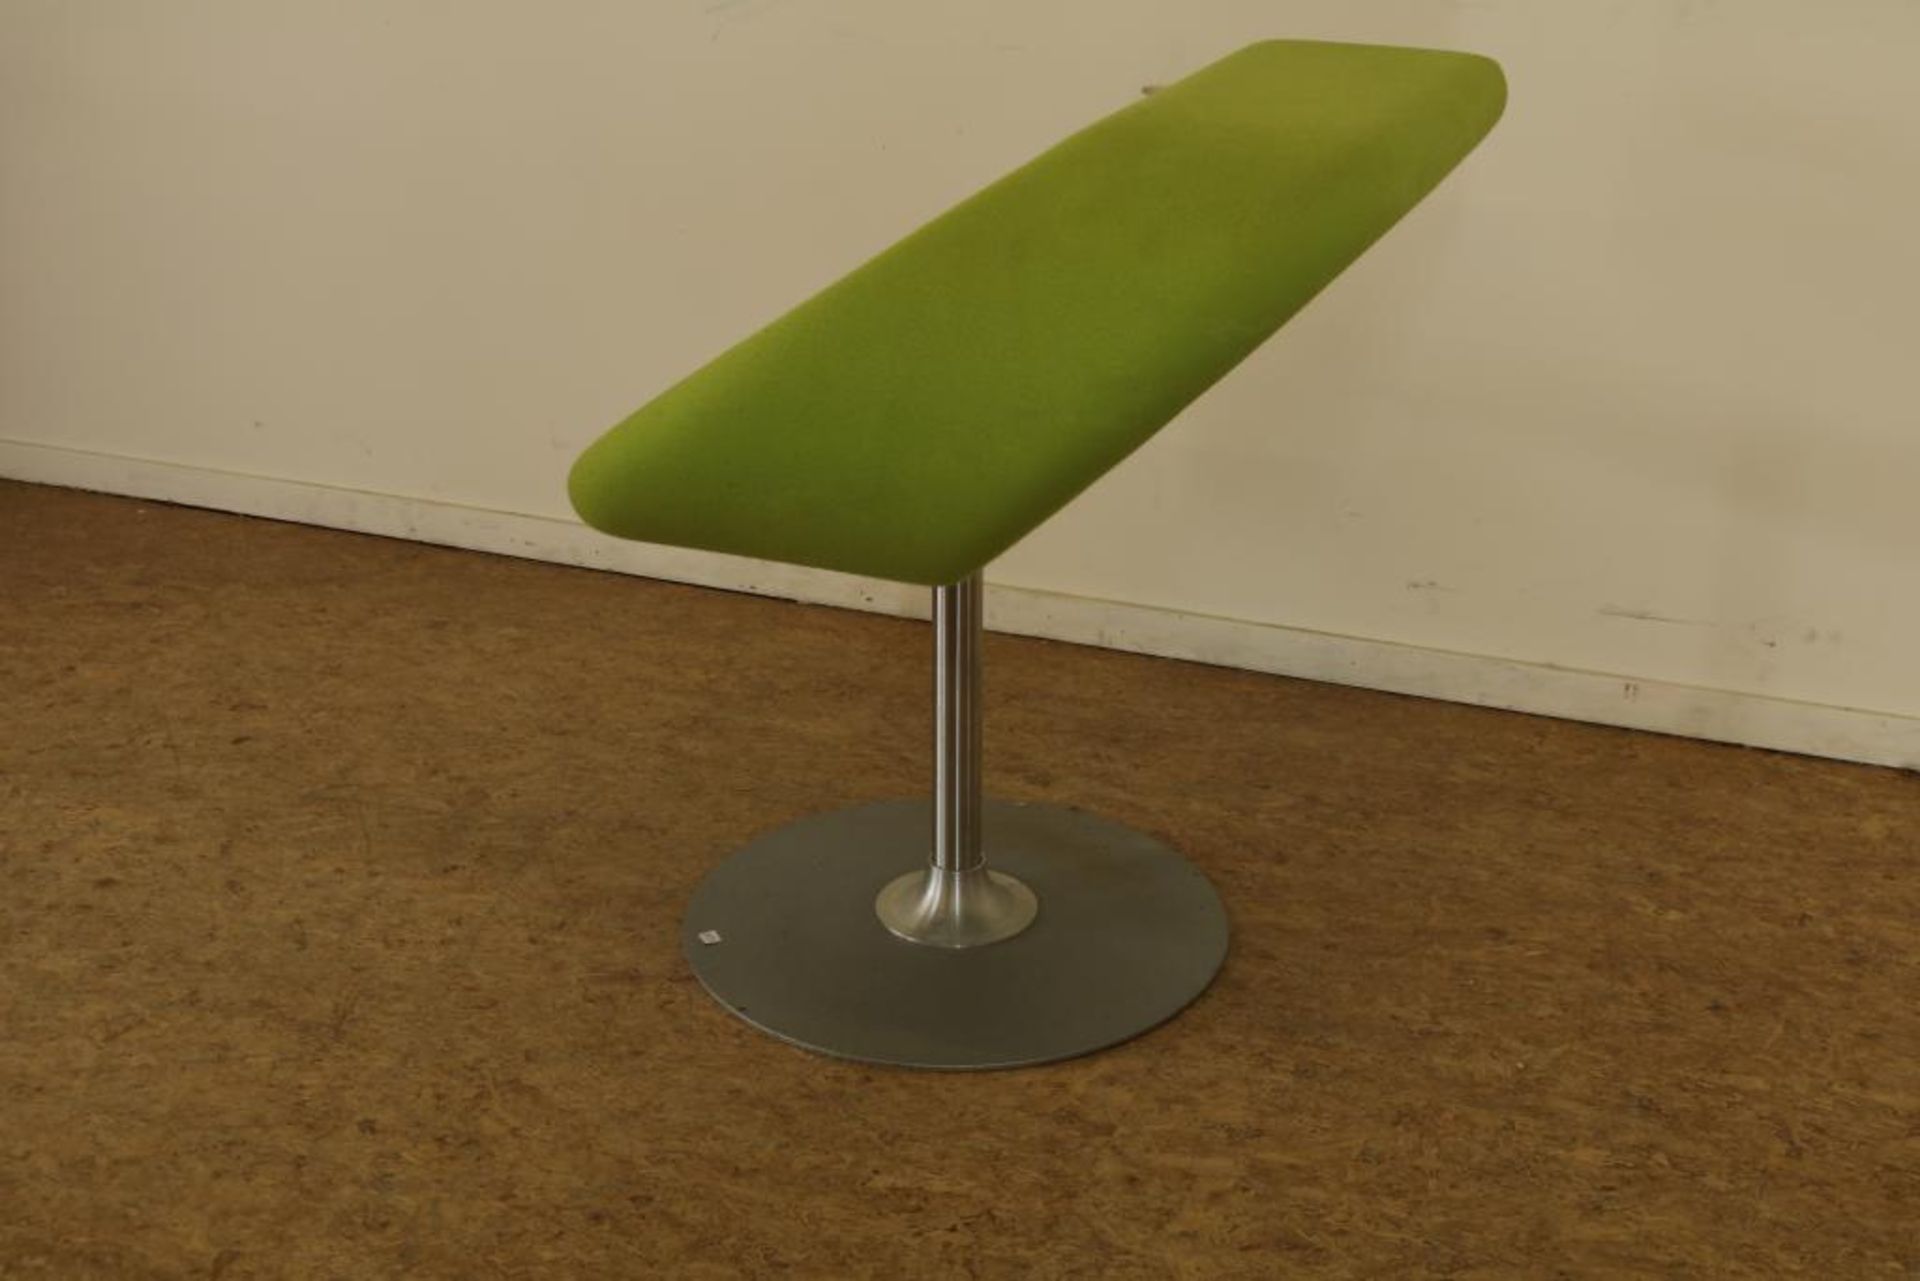 Green lined design chair, model: Innovation C, designer: Frederik Mattson, for: Bla StationGroen - Bild 2 aus 5